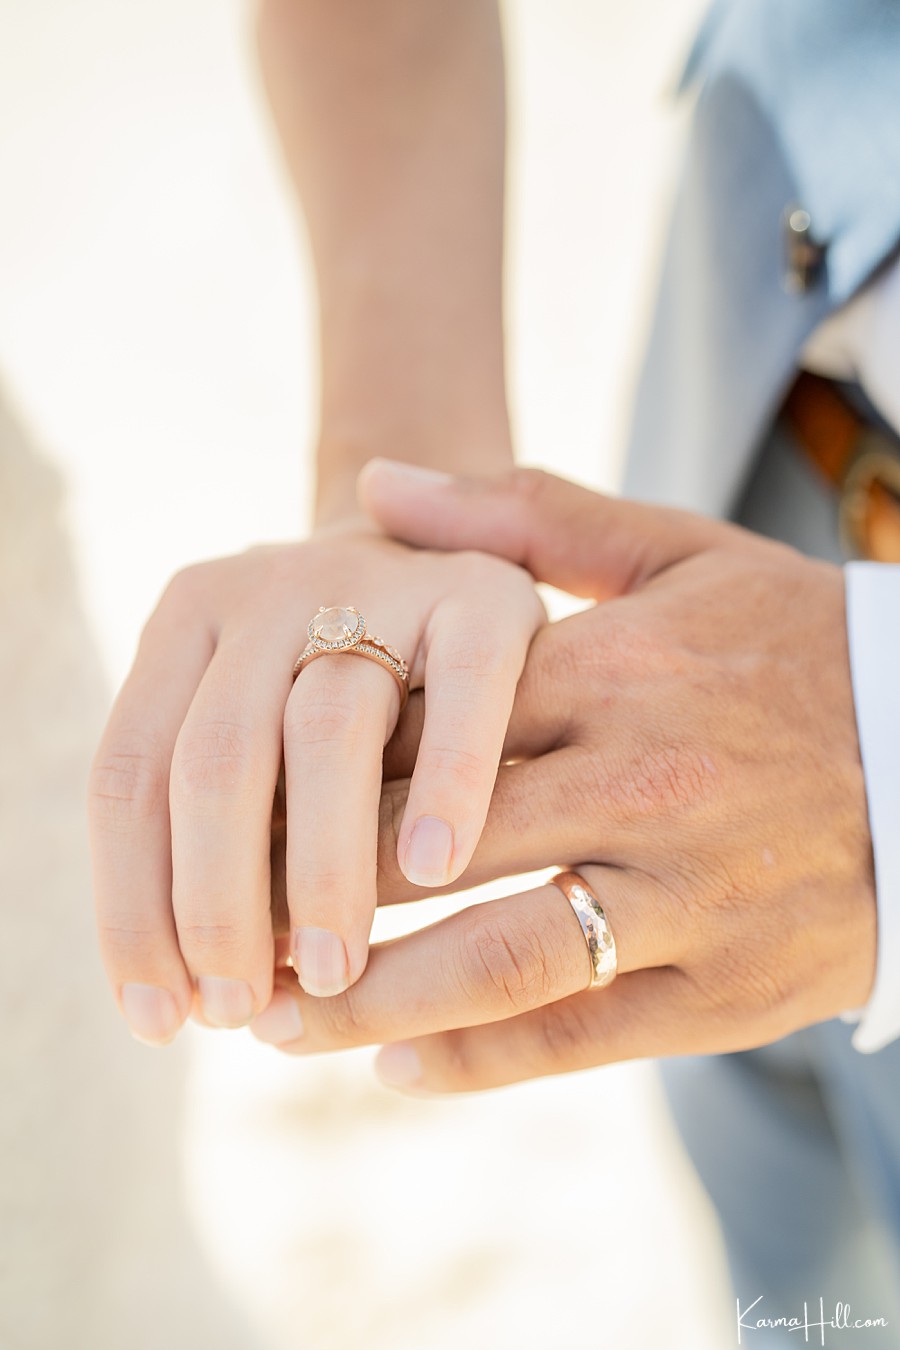 Oahu Beach Wedding rings